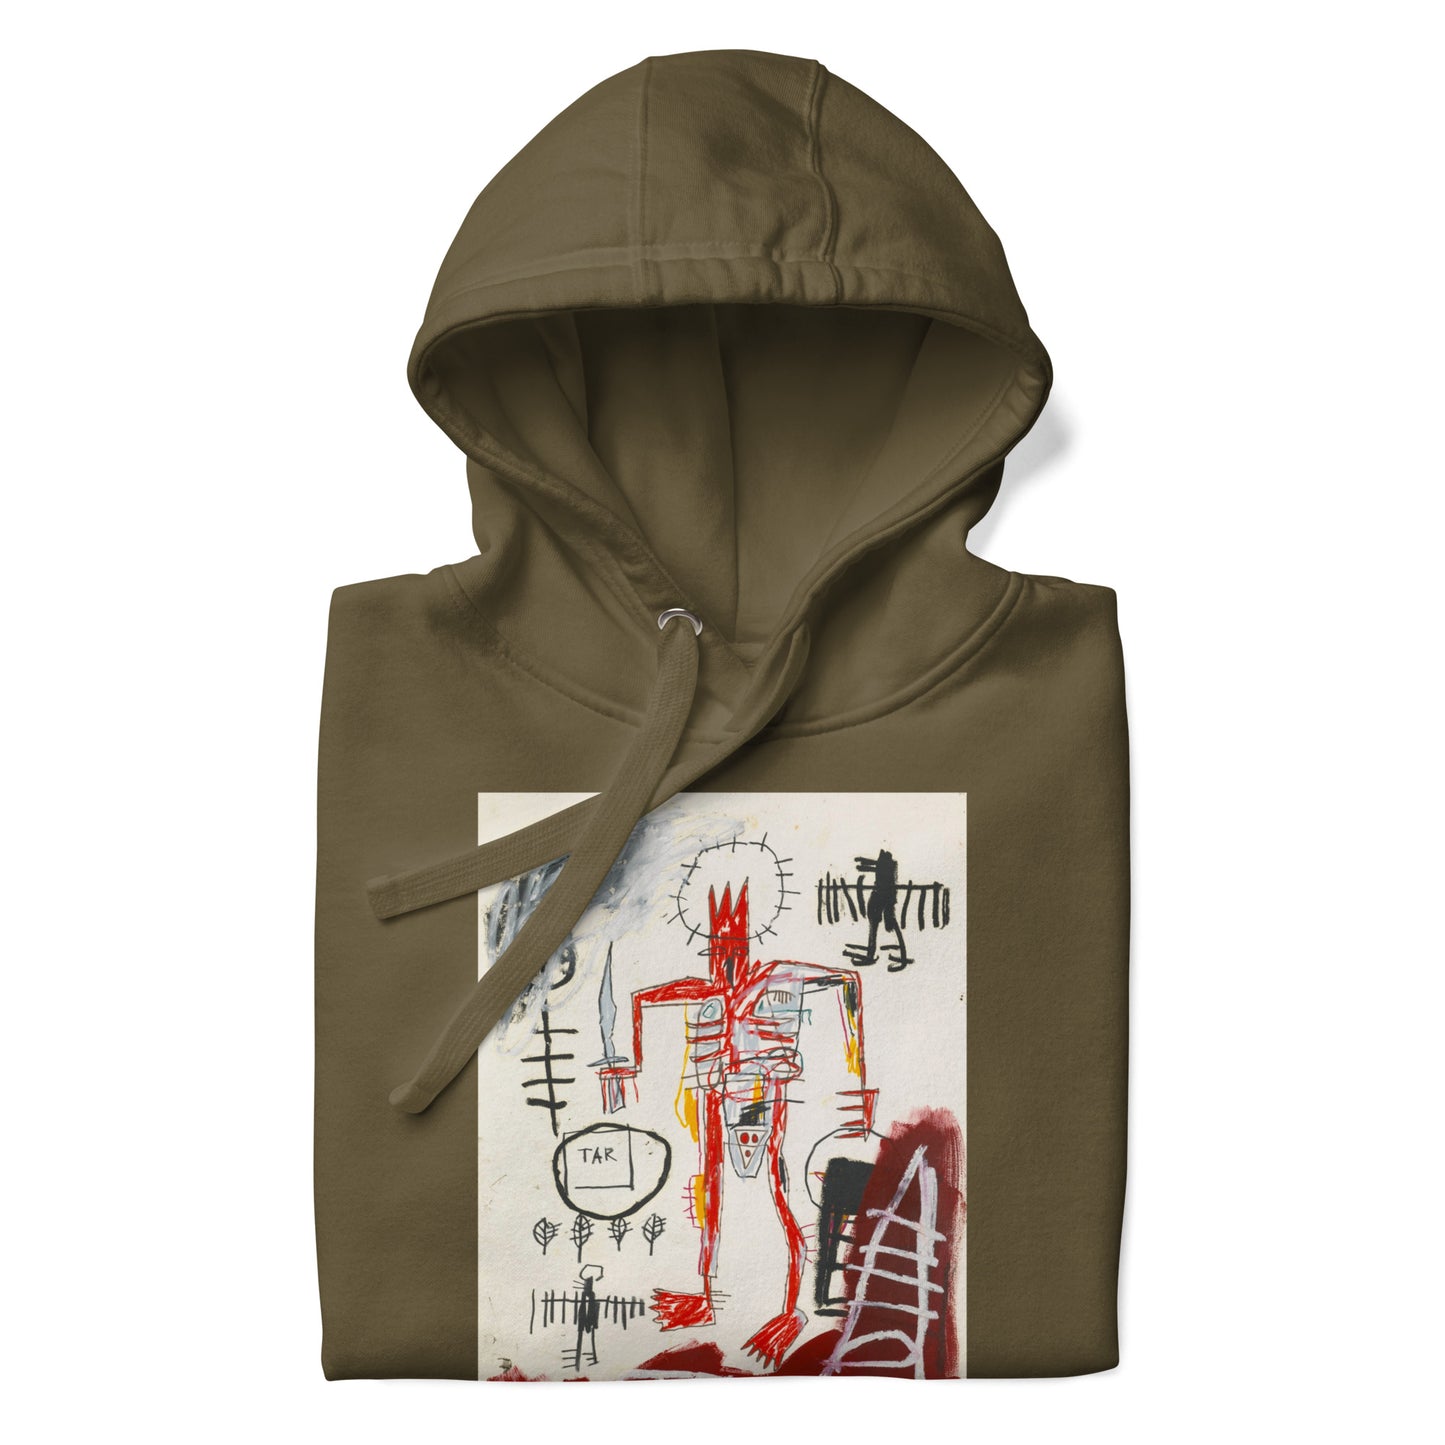 Jean-Michel Basquiat "Untitled" Artwork Printed Premium Streetwear Sweatshirt Hoodie Olive Green